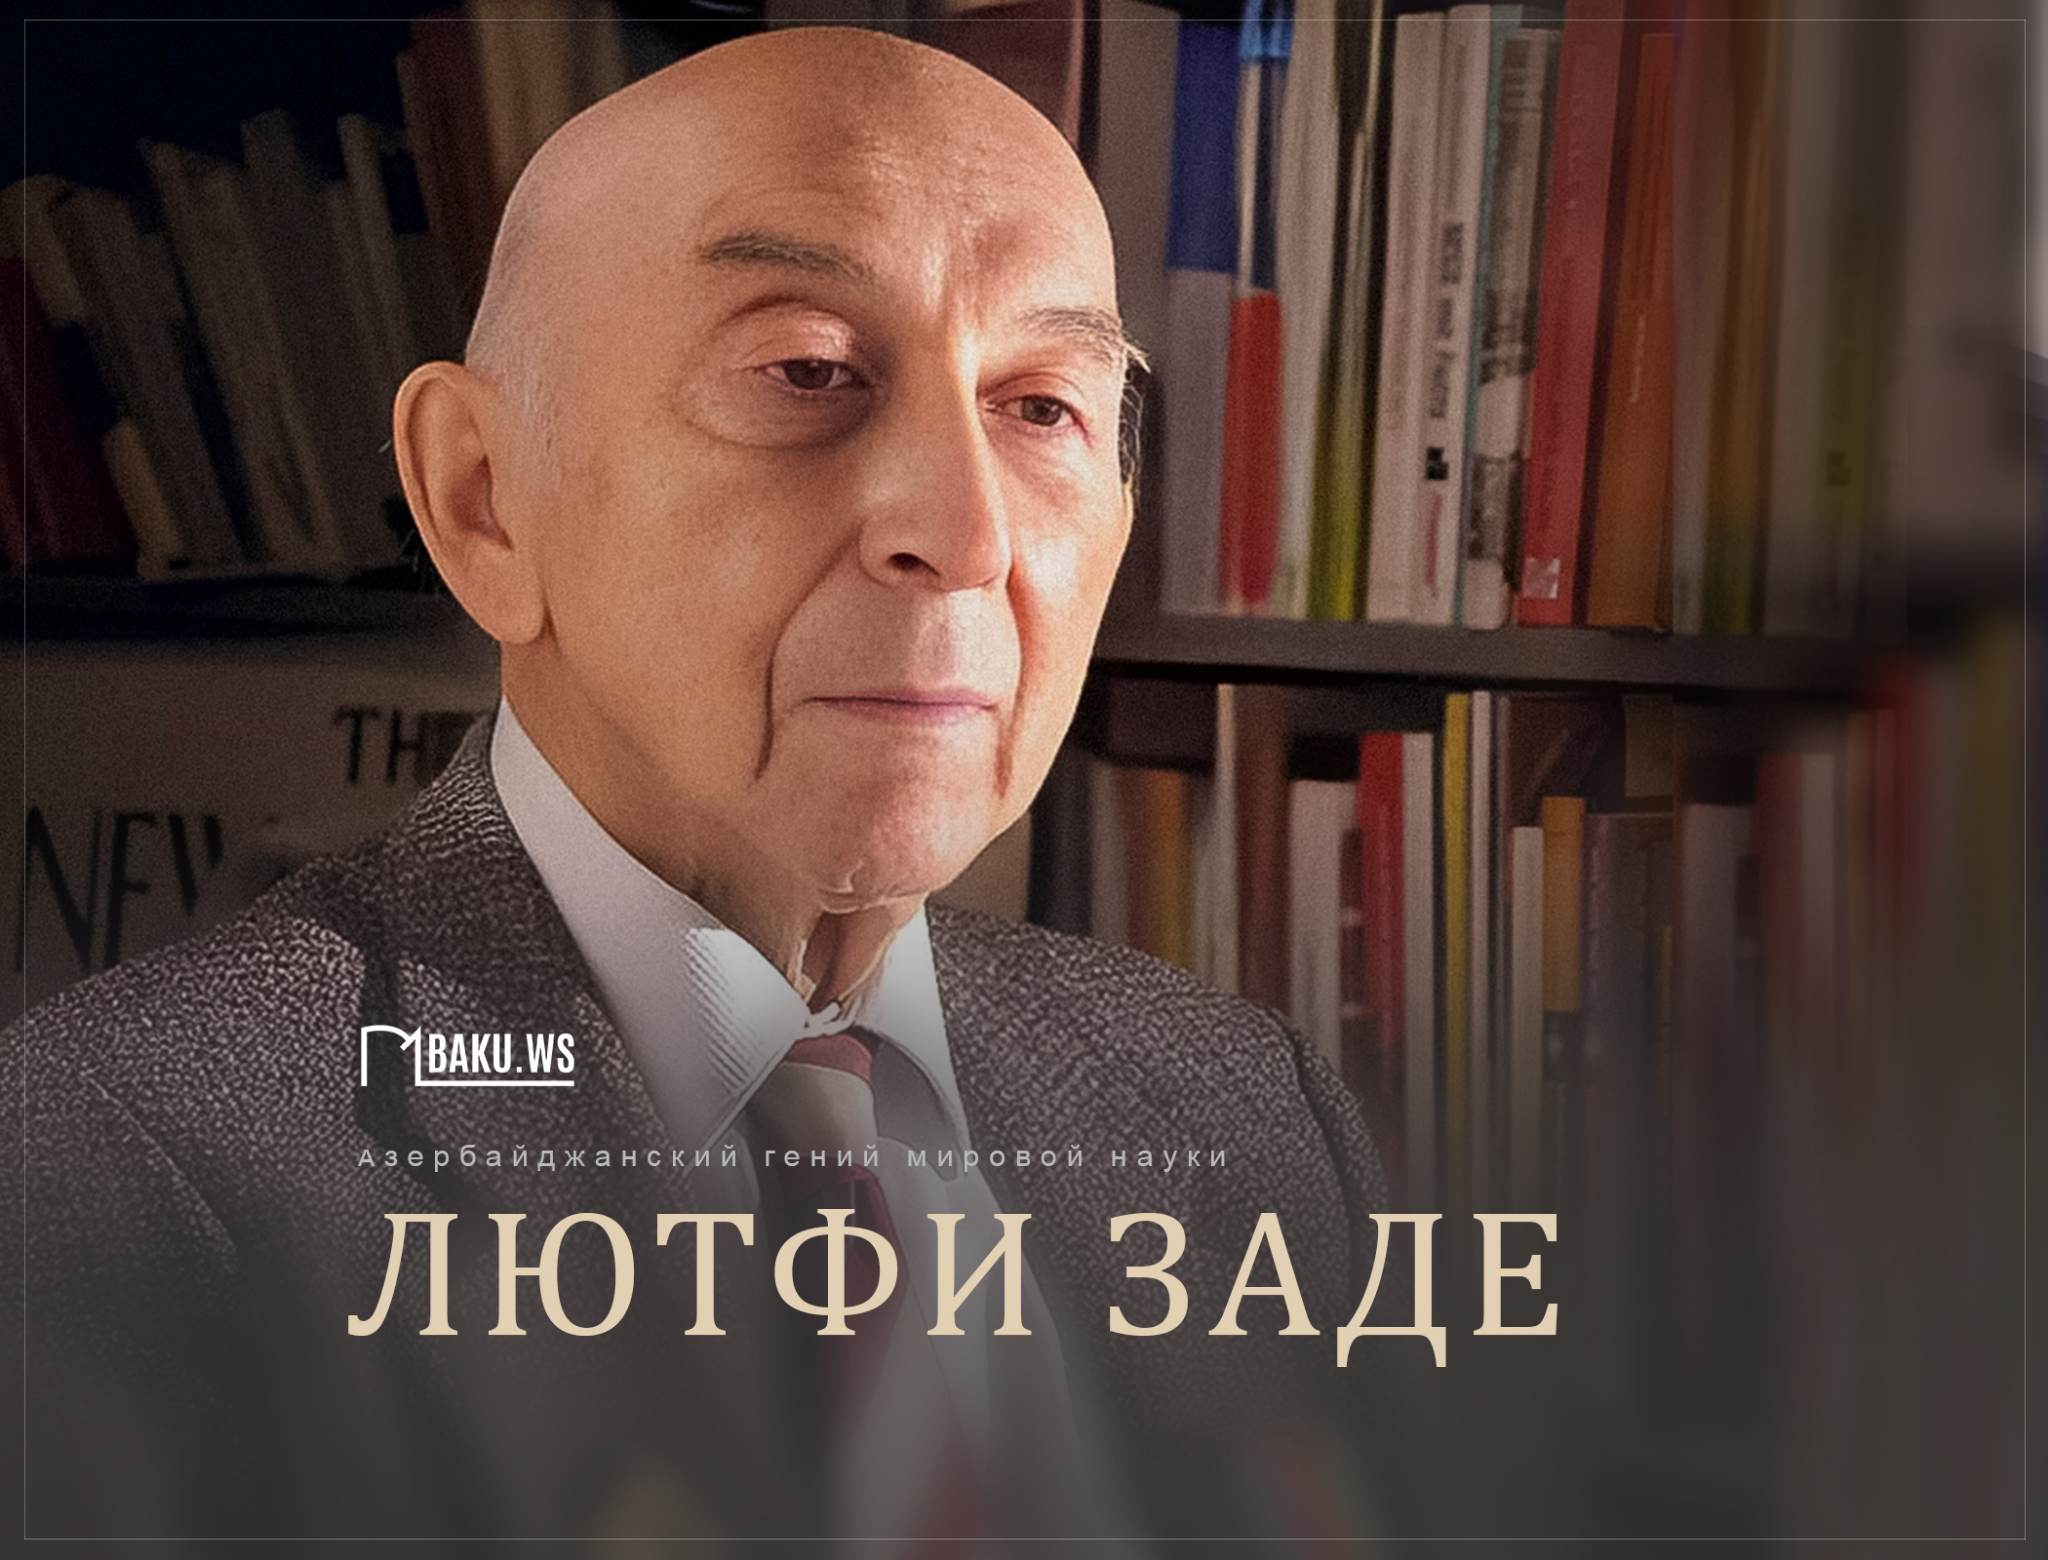 Сегодня день рождения выдающегося азербайджанского ученого Лютфи Заде